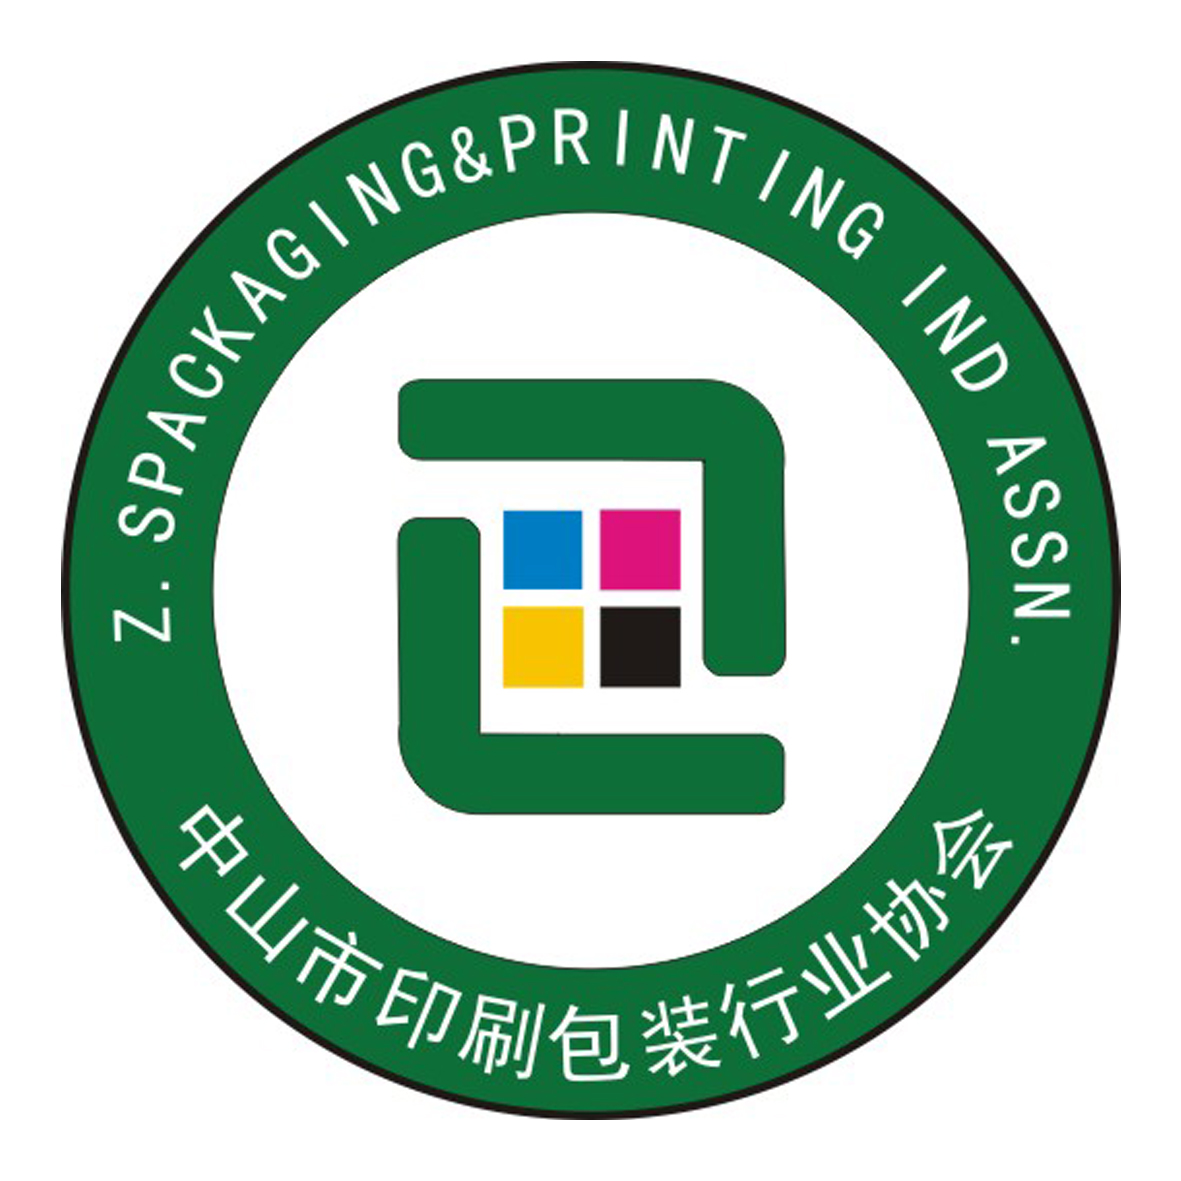 印刷包装行业协会